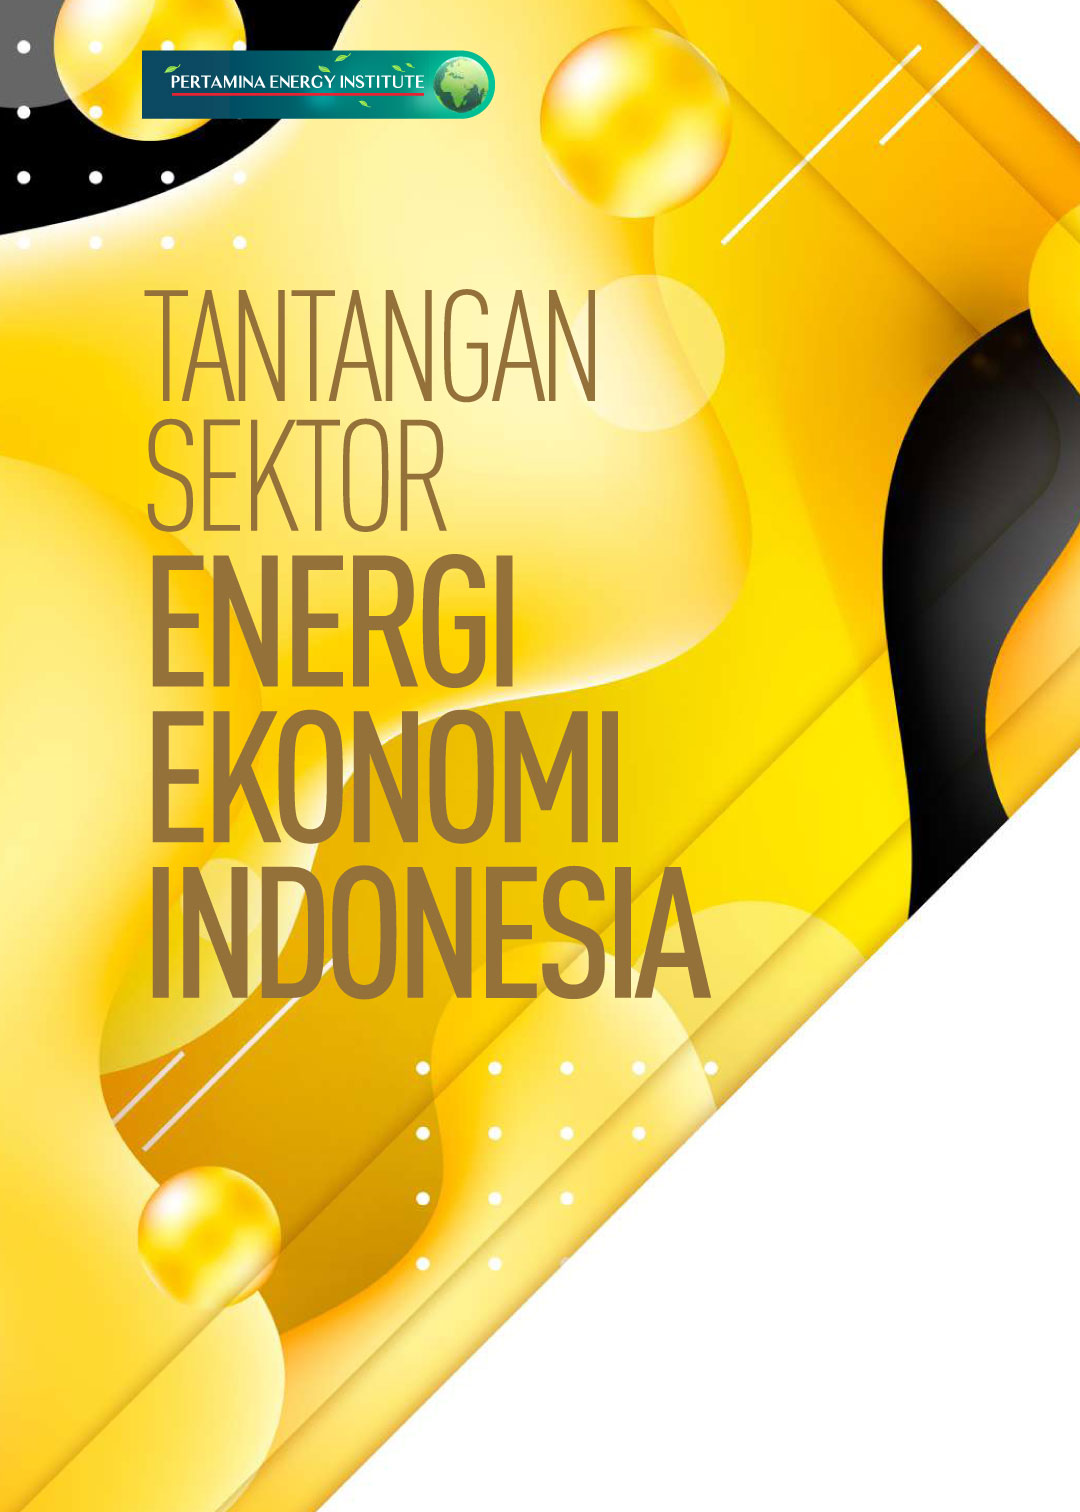 Tantangan Sektor Energi Ekonomi Indonesia